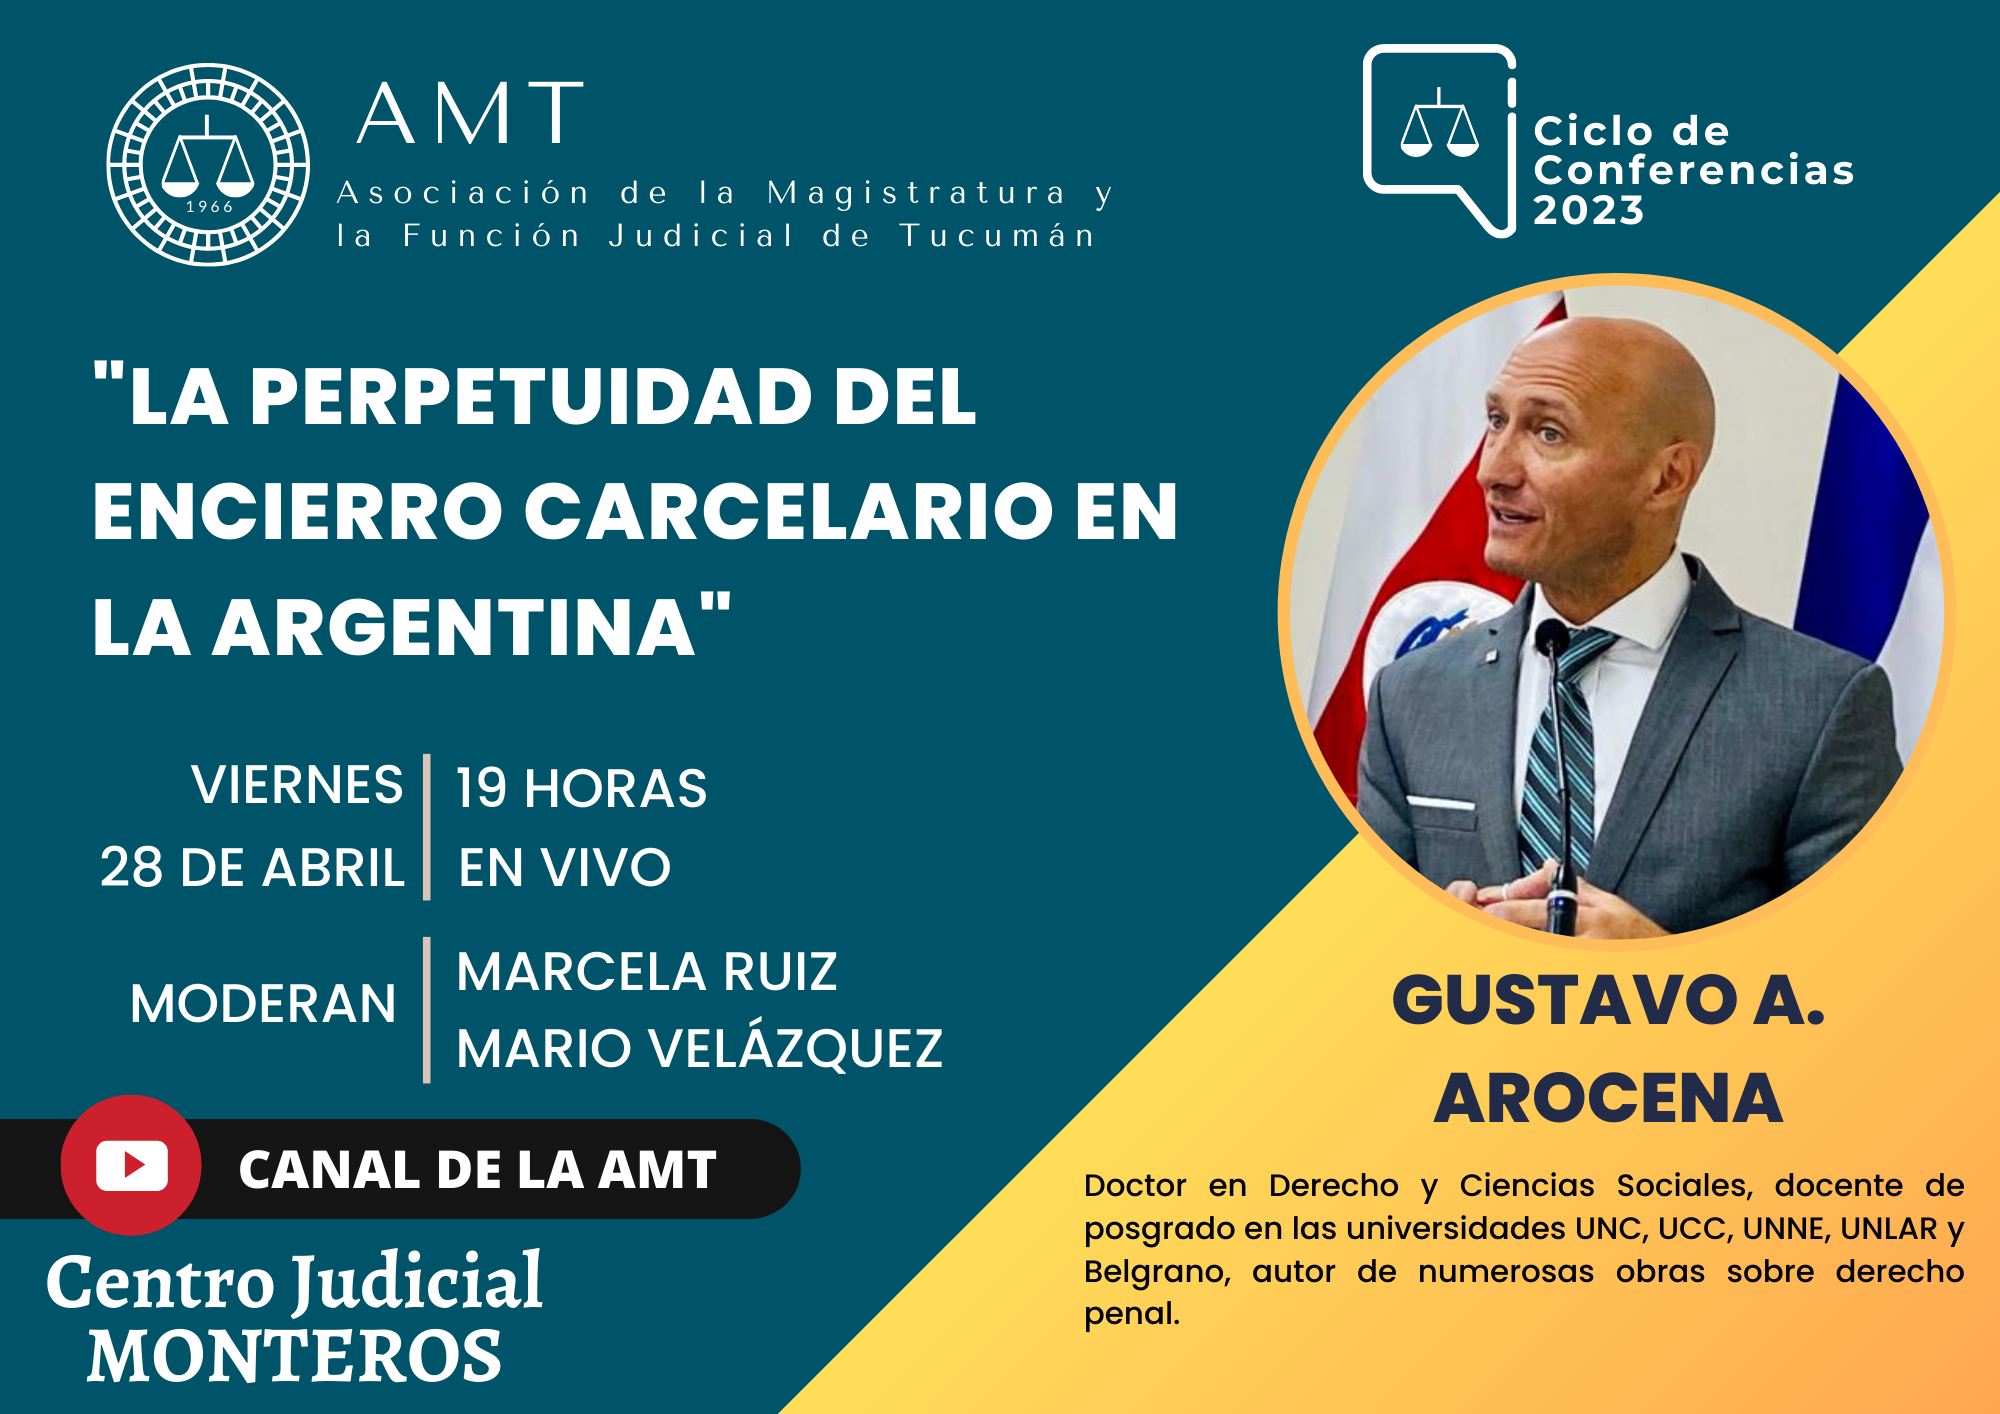 Vuelva a ver la conferencia de Gustavo A. Arocena «La perpetuidad del encierro carcelario en la Argentina»